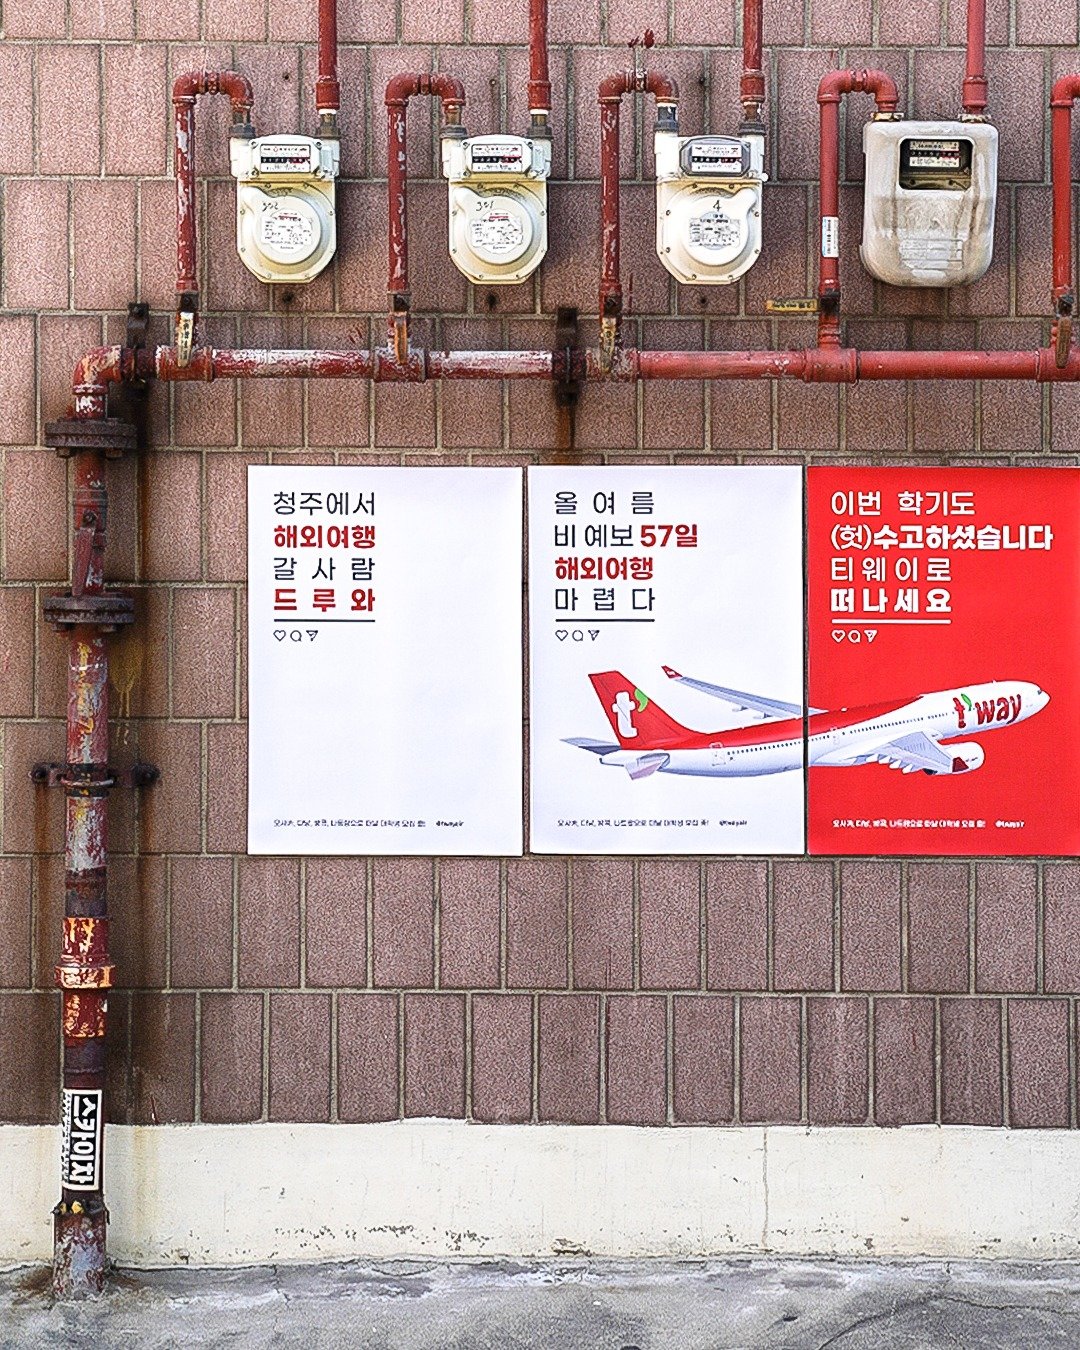 티웨이항공의 대학생 여행단 모집 홍보 포스터. 티웨이항공 인스타그램